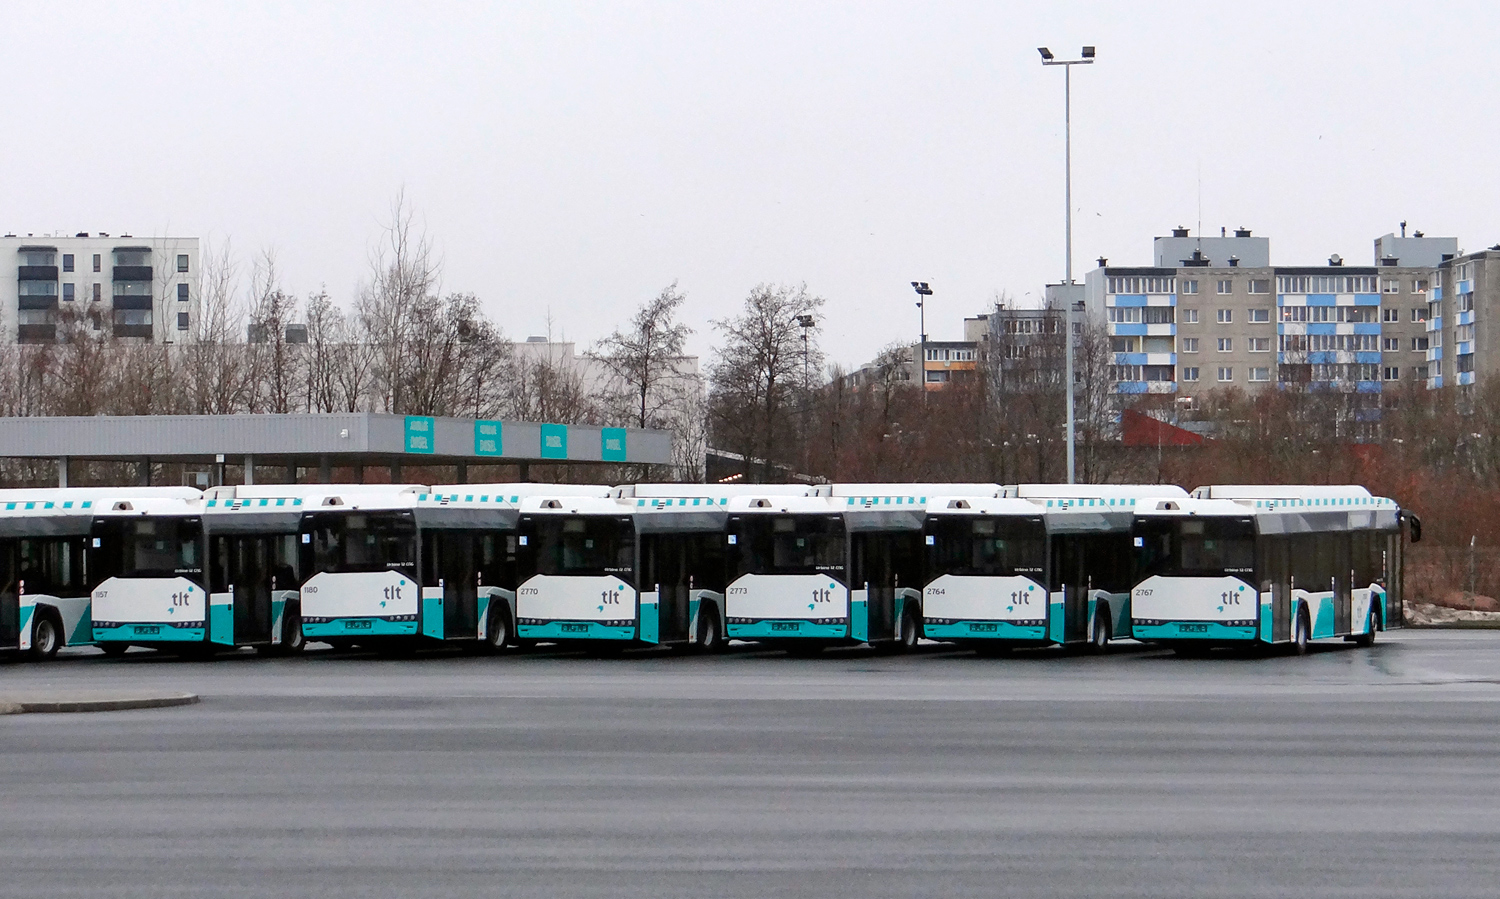 Εσθονία, Solaris Urbino IV 12 CNG # 2767; Εσθονία — Harjumaa — Bus stations, last stops, sites, parks, various; Εσθονία — New buses